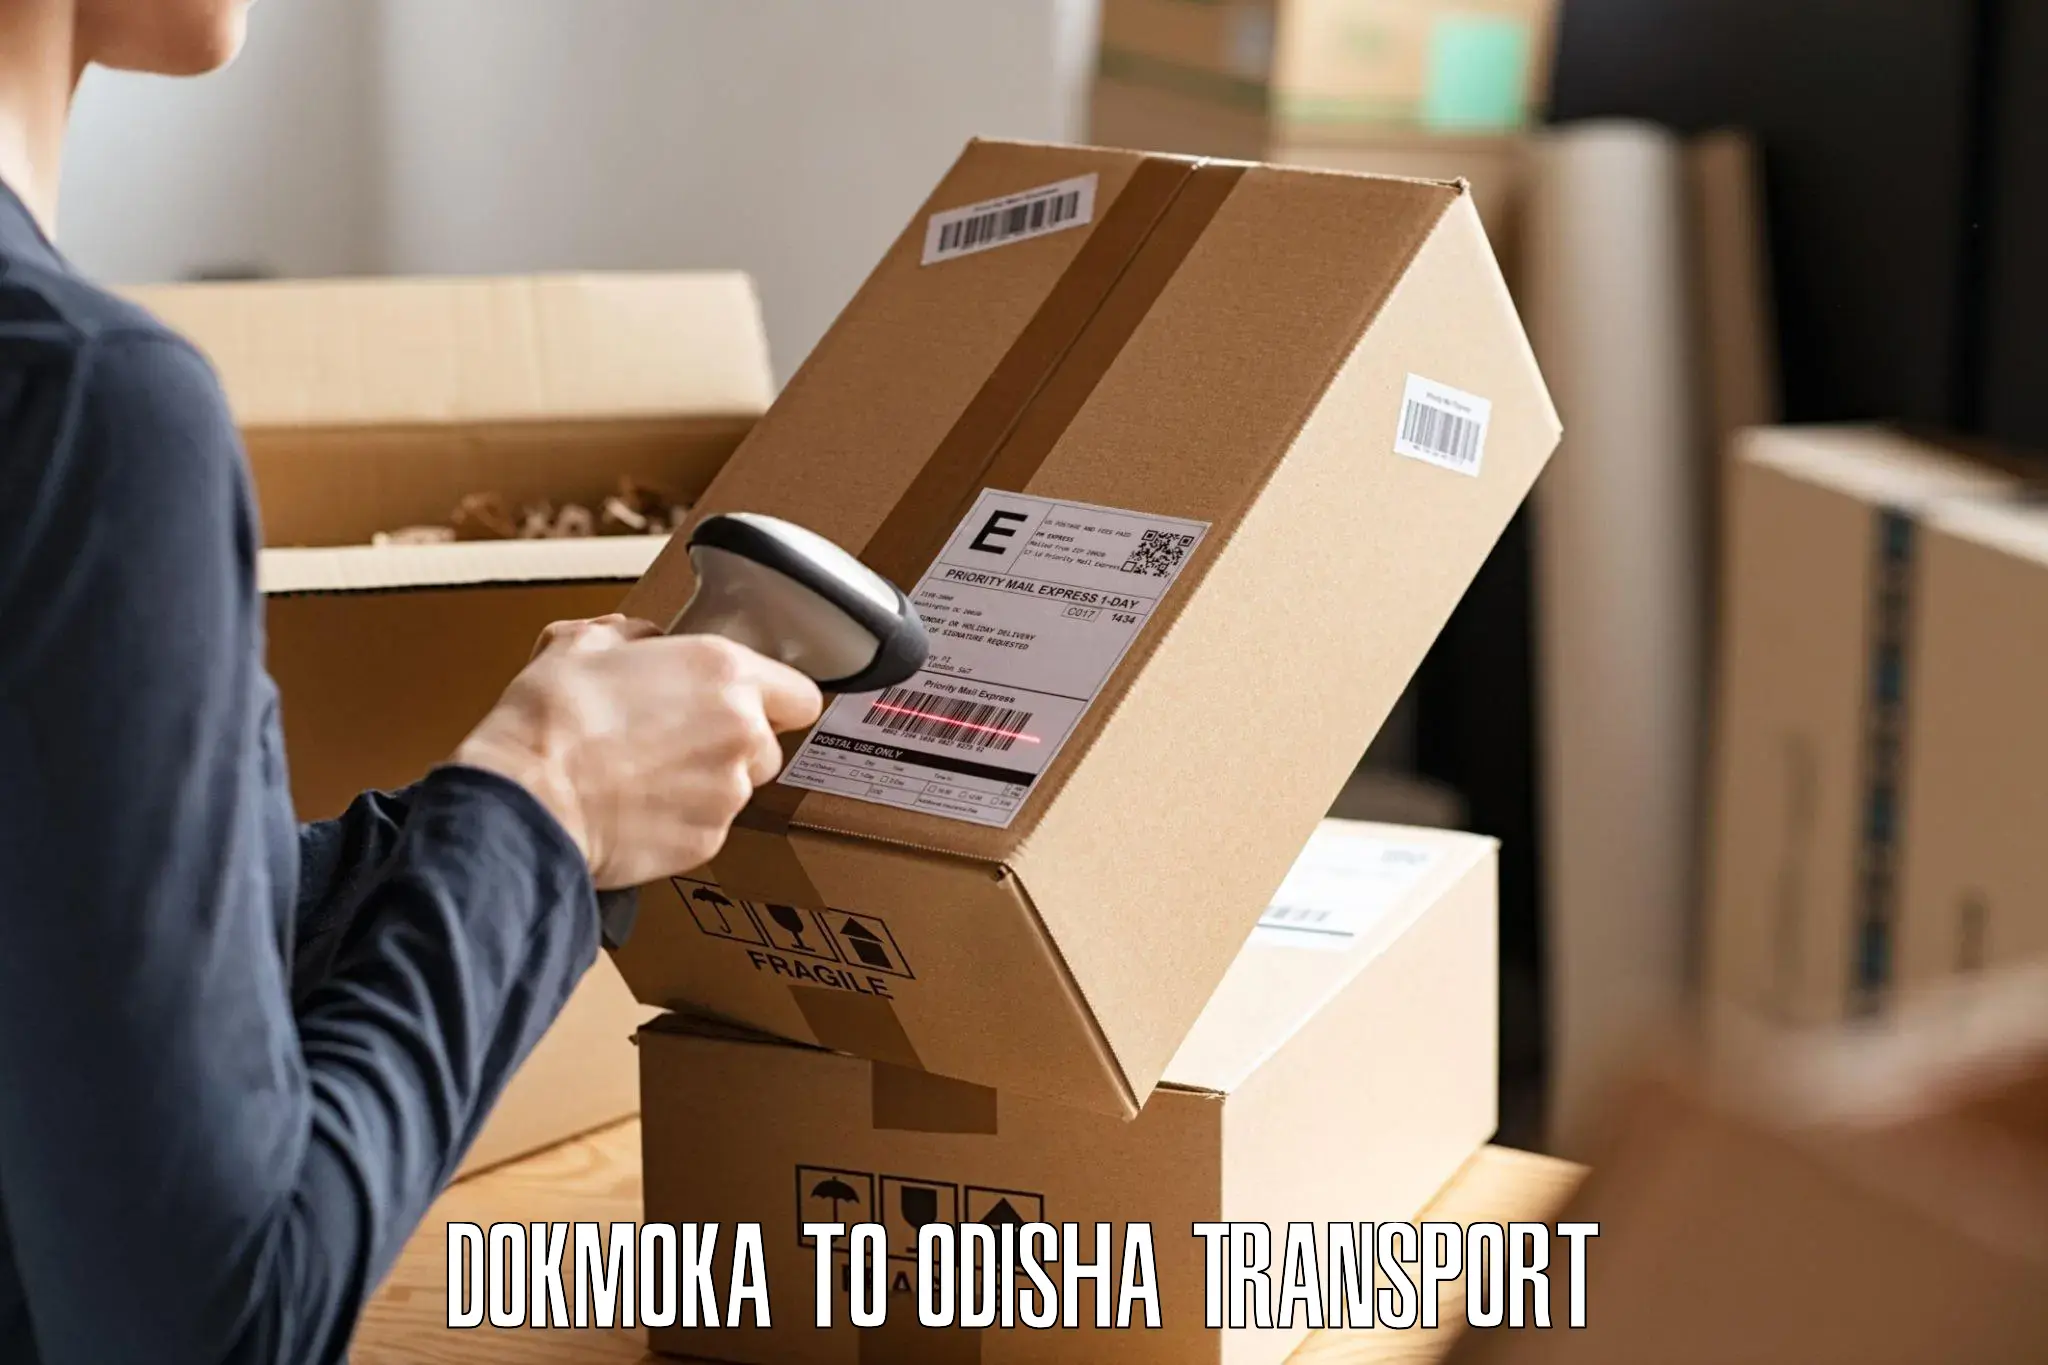 Transportation services Dokmoka to Tihidi